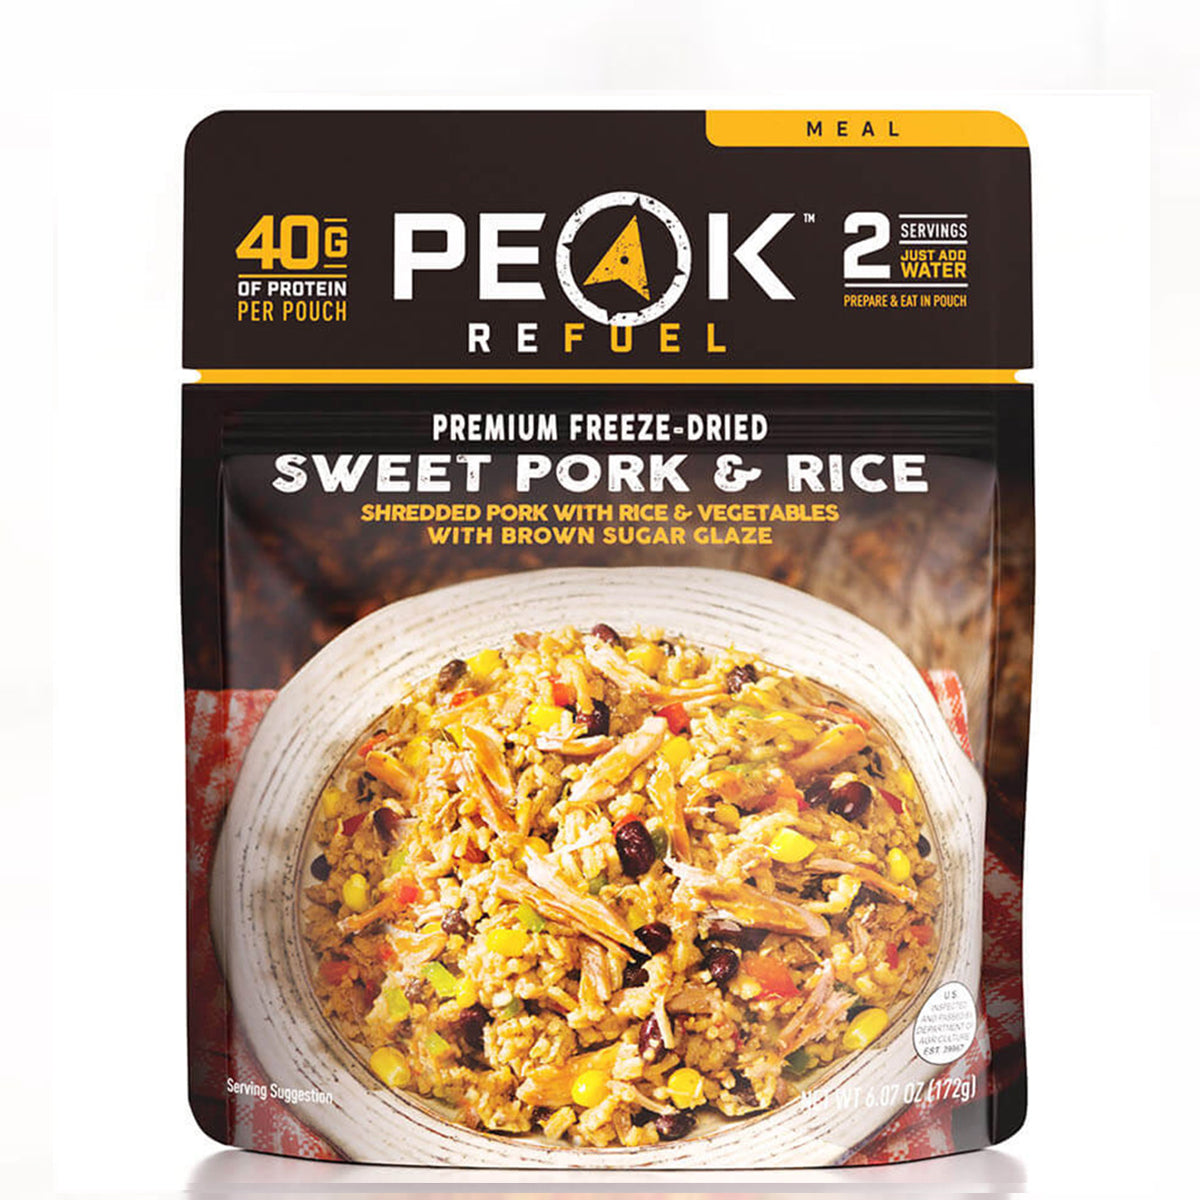 Peak Refuel Sweet Pork & Rice by Peak Refuel | Camping - goHUNT Shop